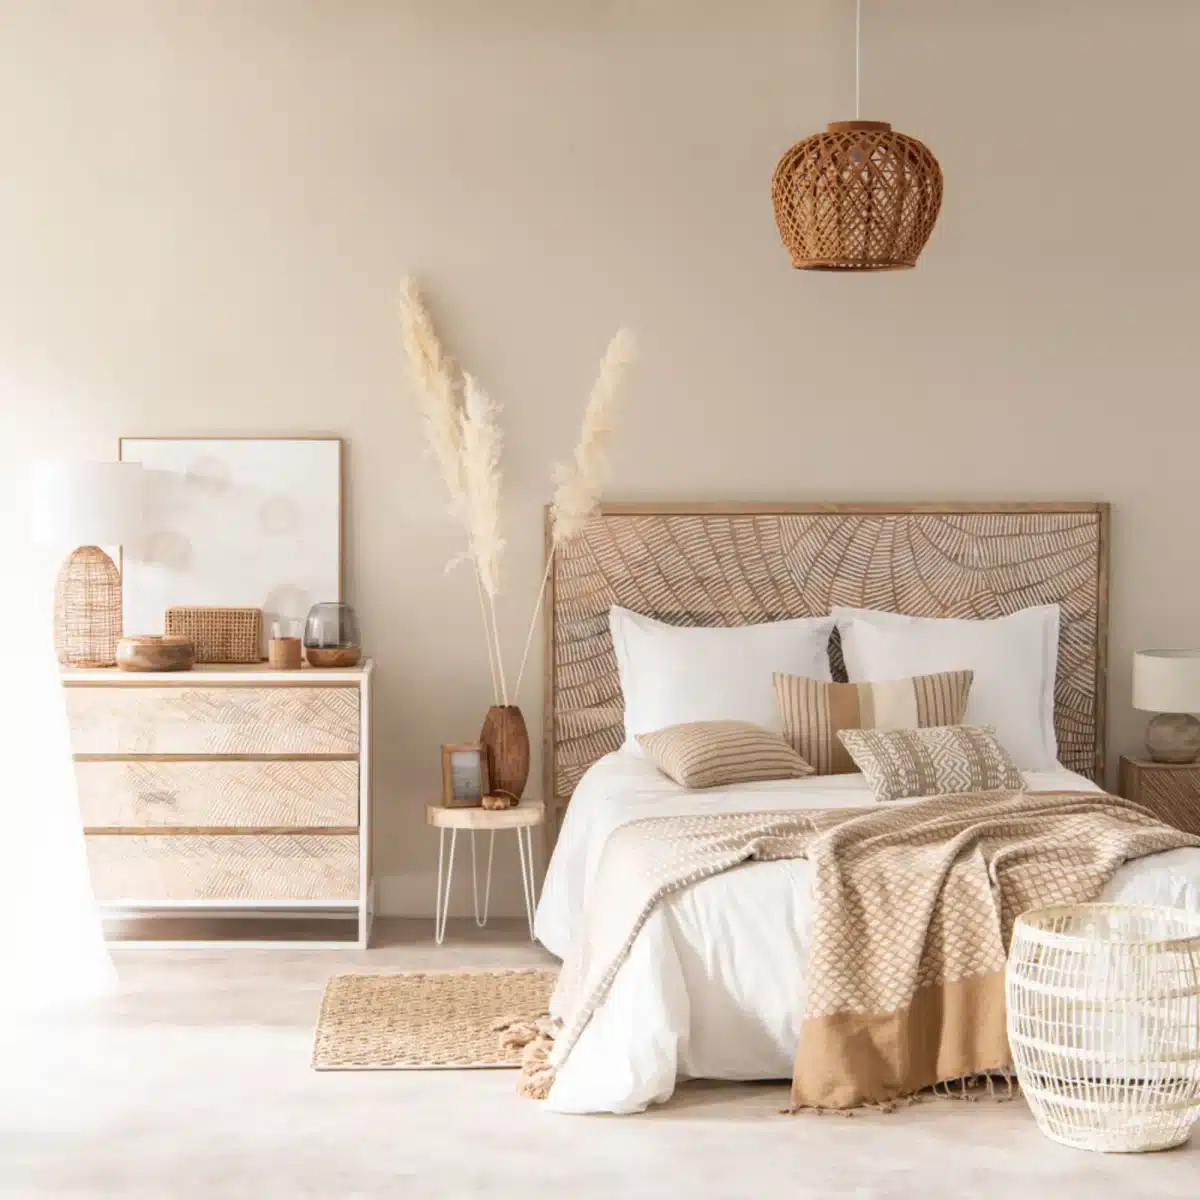 Une chambre paisible avec deco bois et blanc sans oubleir la tete de lit en bois sculpté